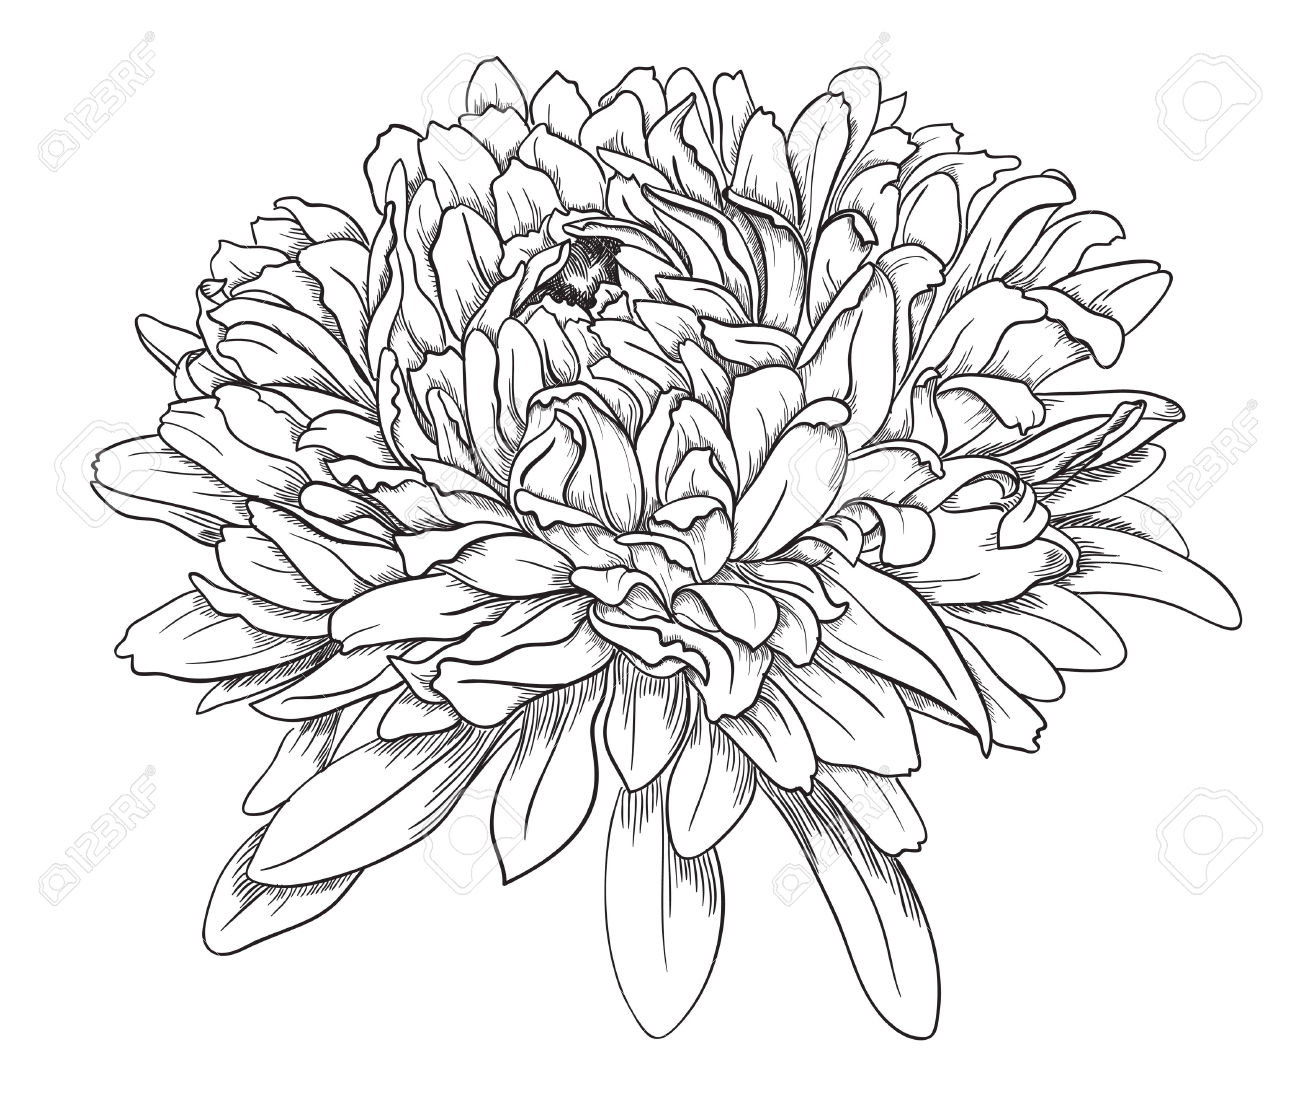 Chrysanthemum Drawing Sketch